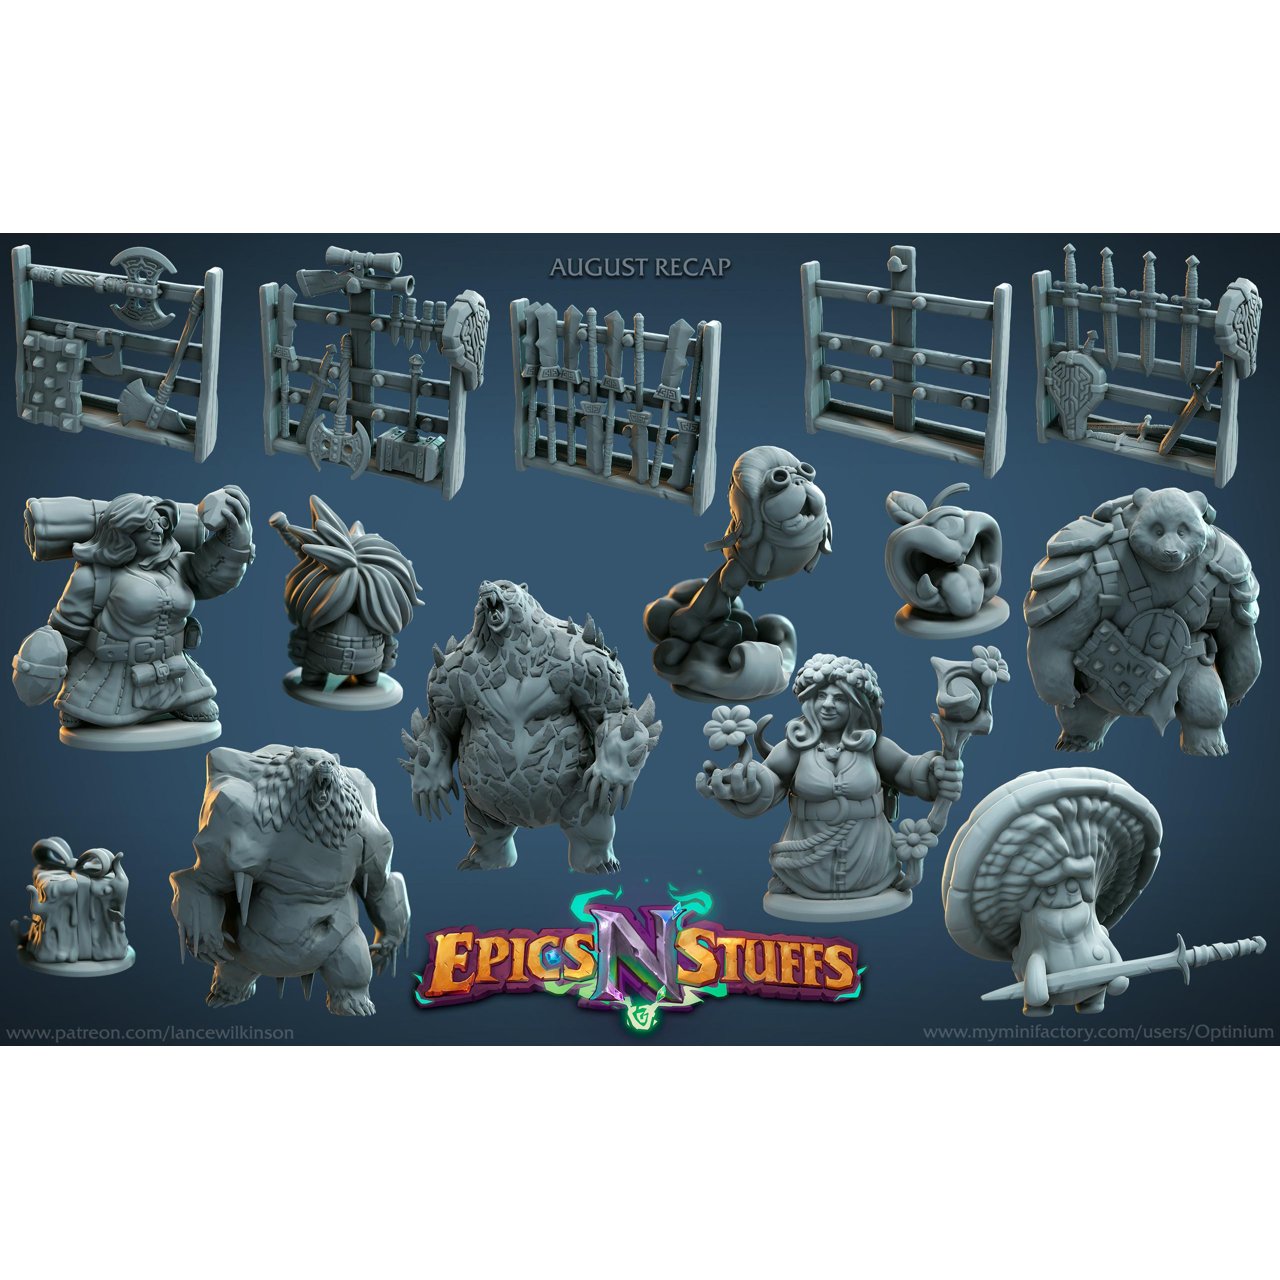 Epics 'N' Stuffs Miniatures August 2020 Epic N Stuffs Miniatures  MINISTL